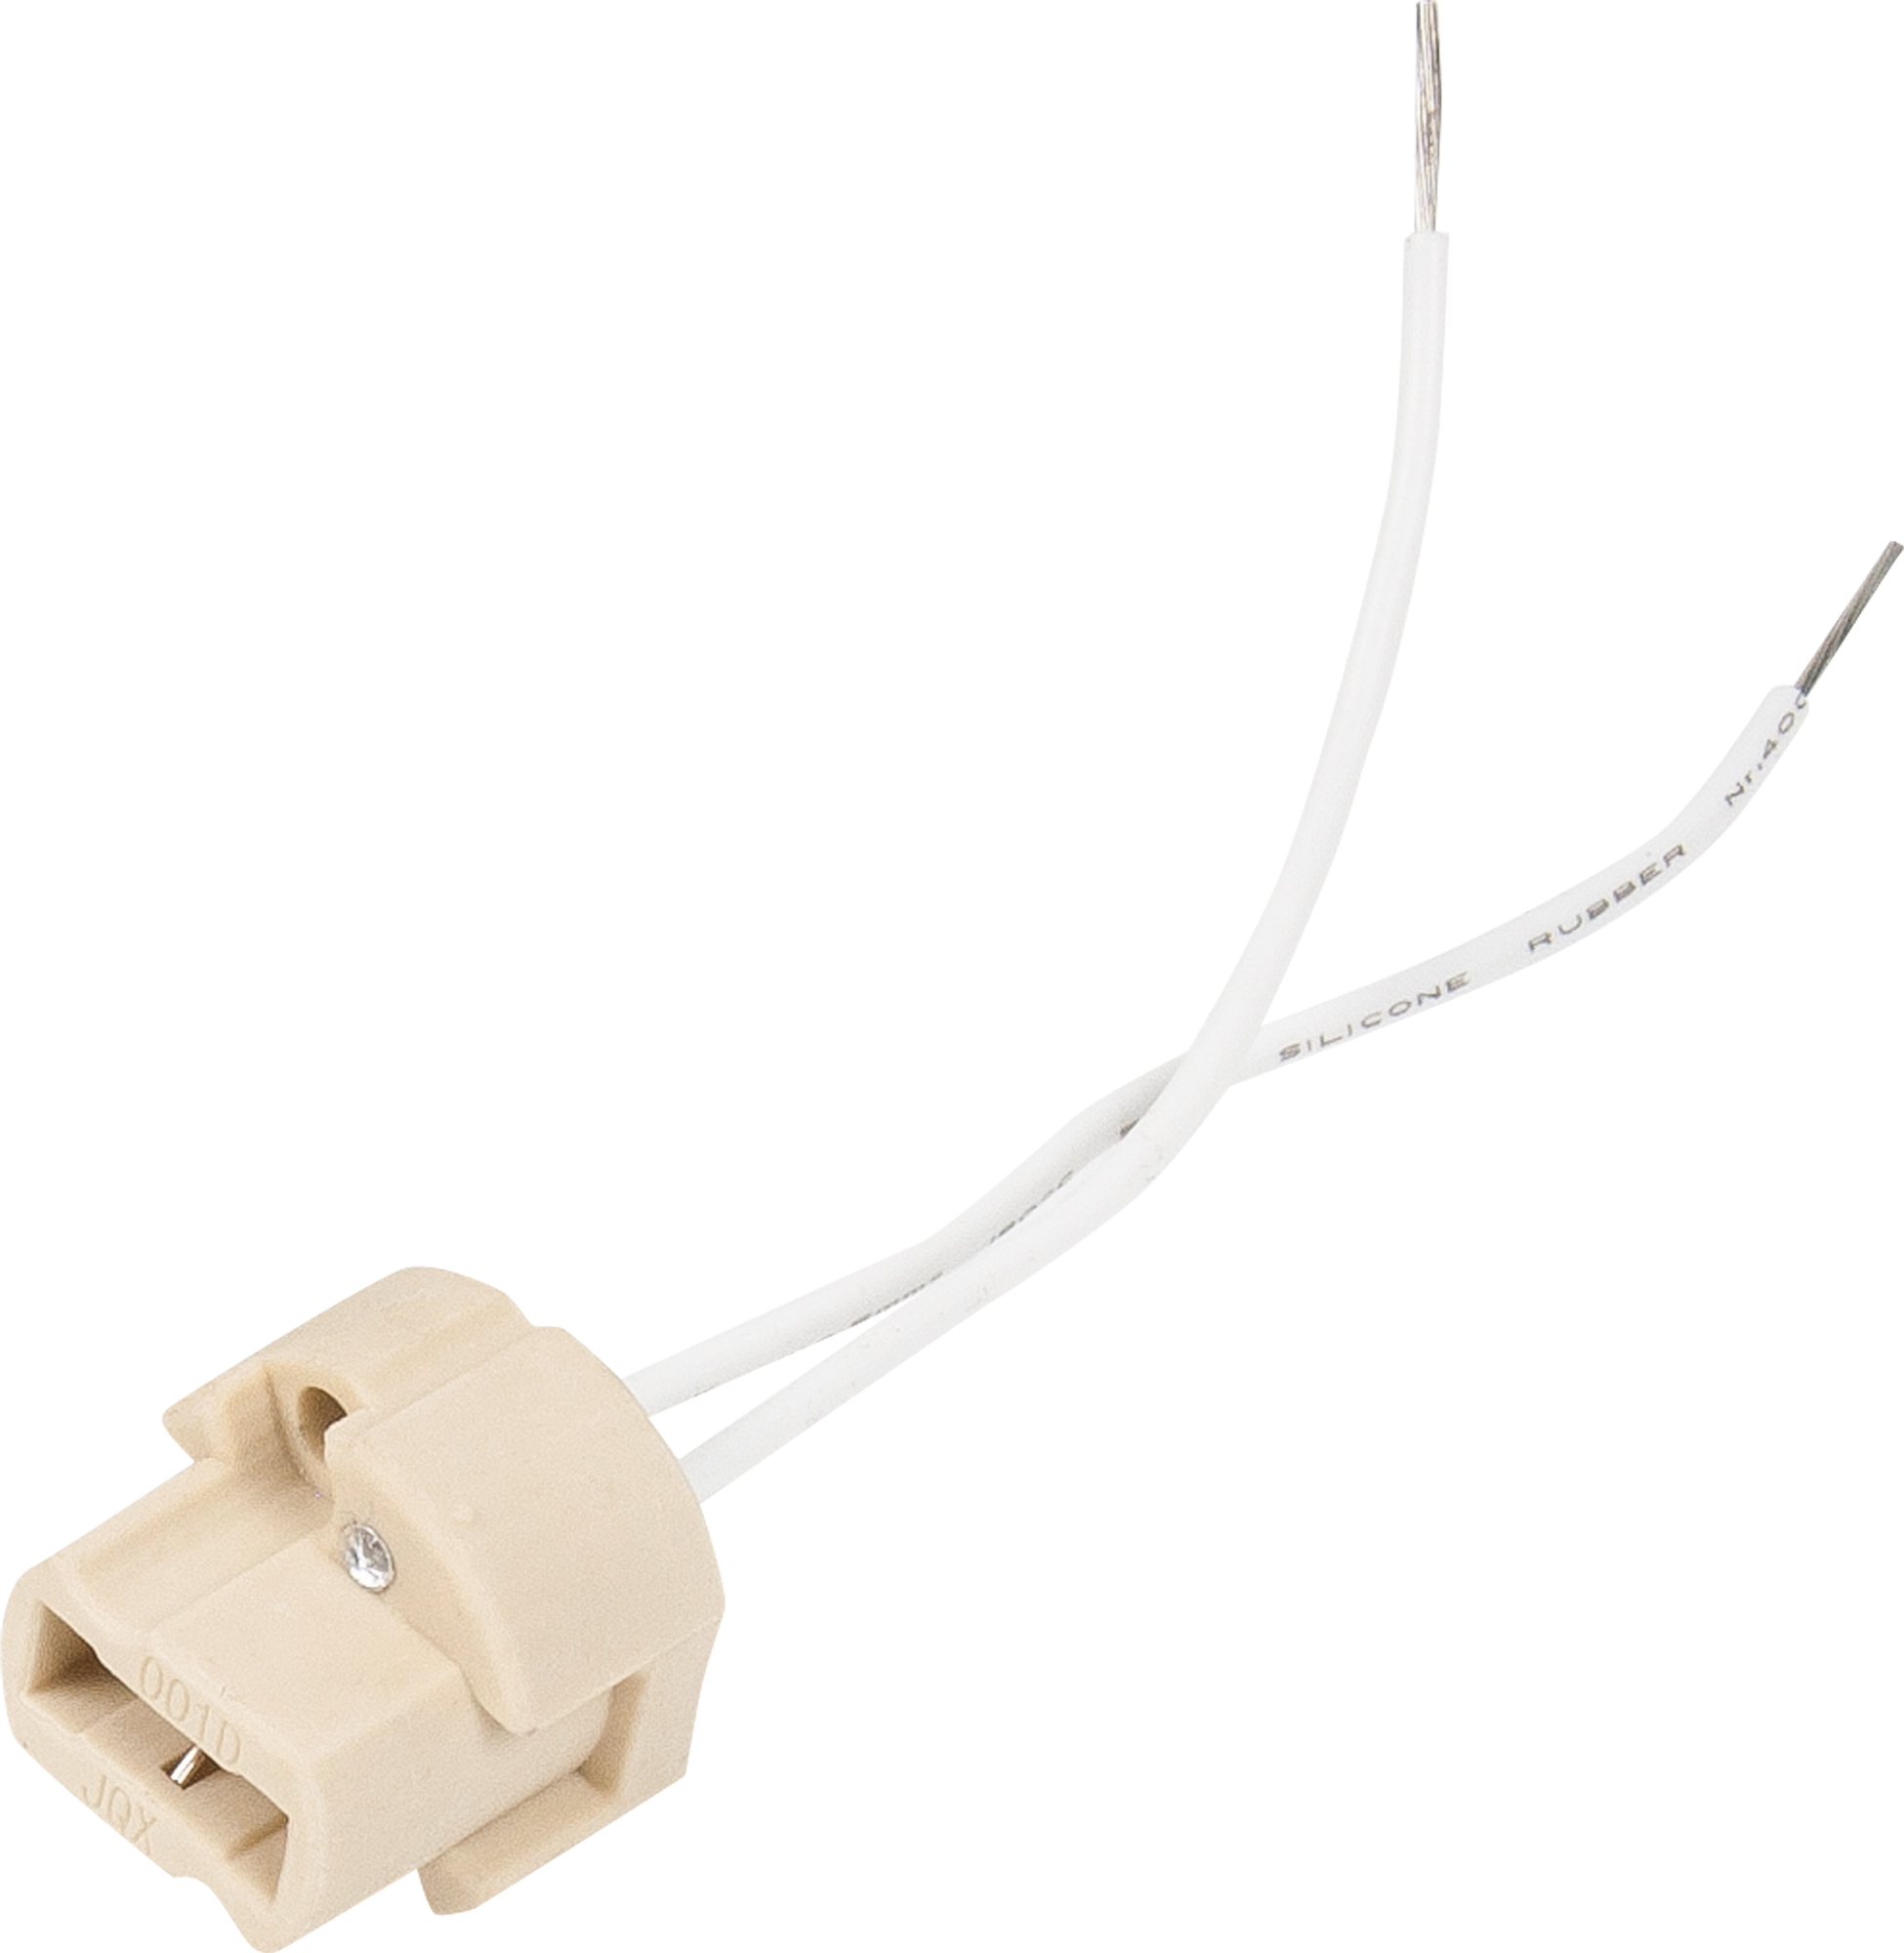 Патрон керамический  для лампы G9, цвет белый по цене 48 ₽/шт .